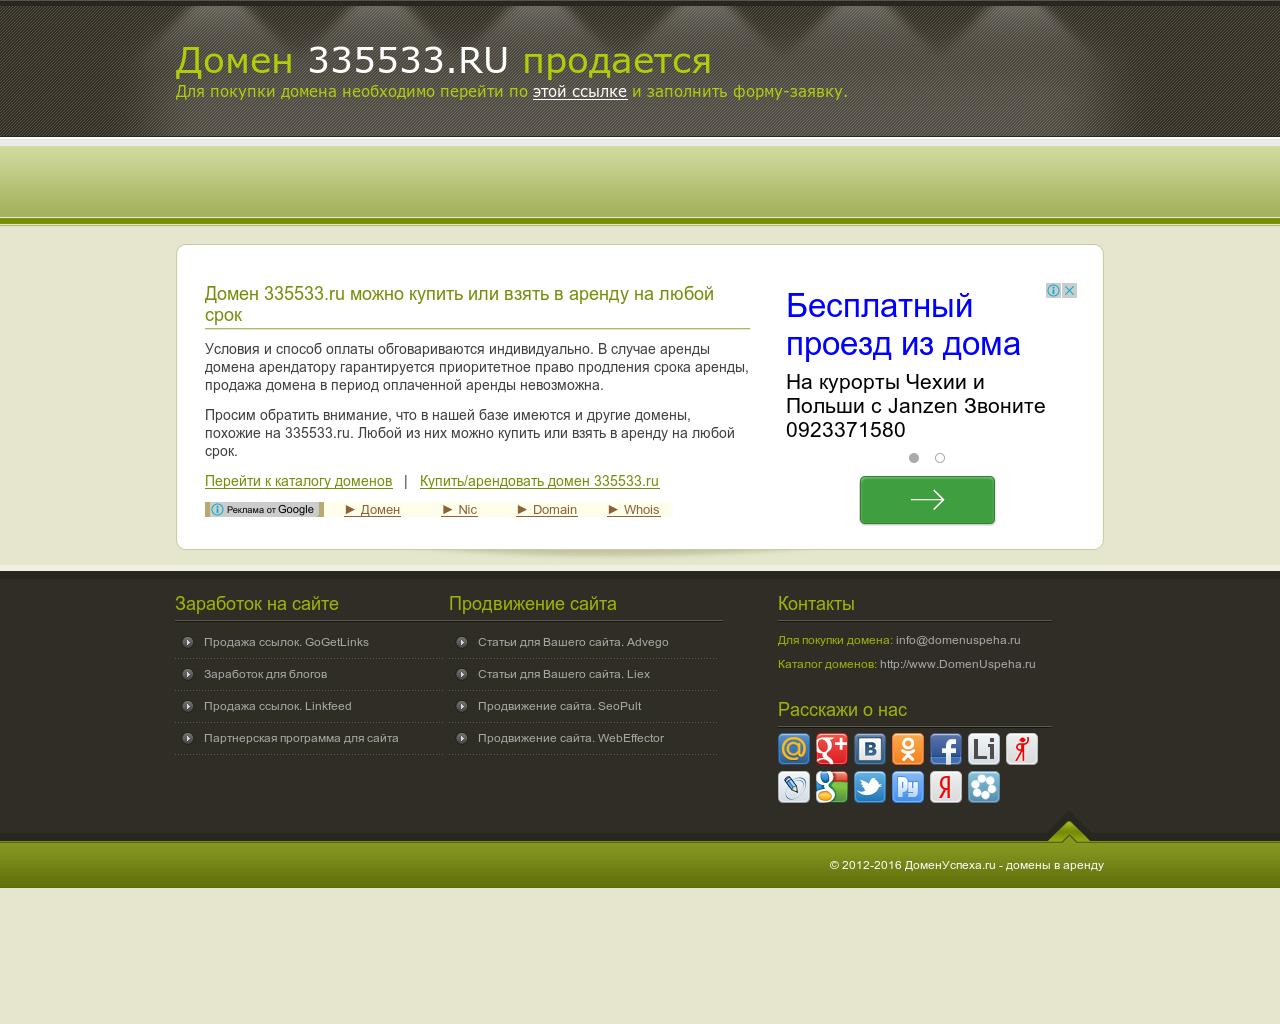 Изображение сайта 335533.ru в разрешении 1280x1024